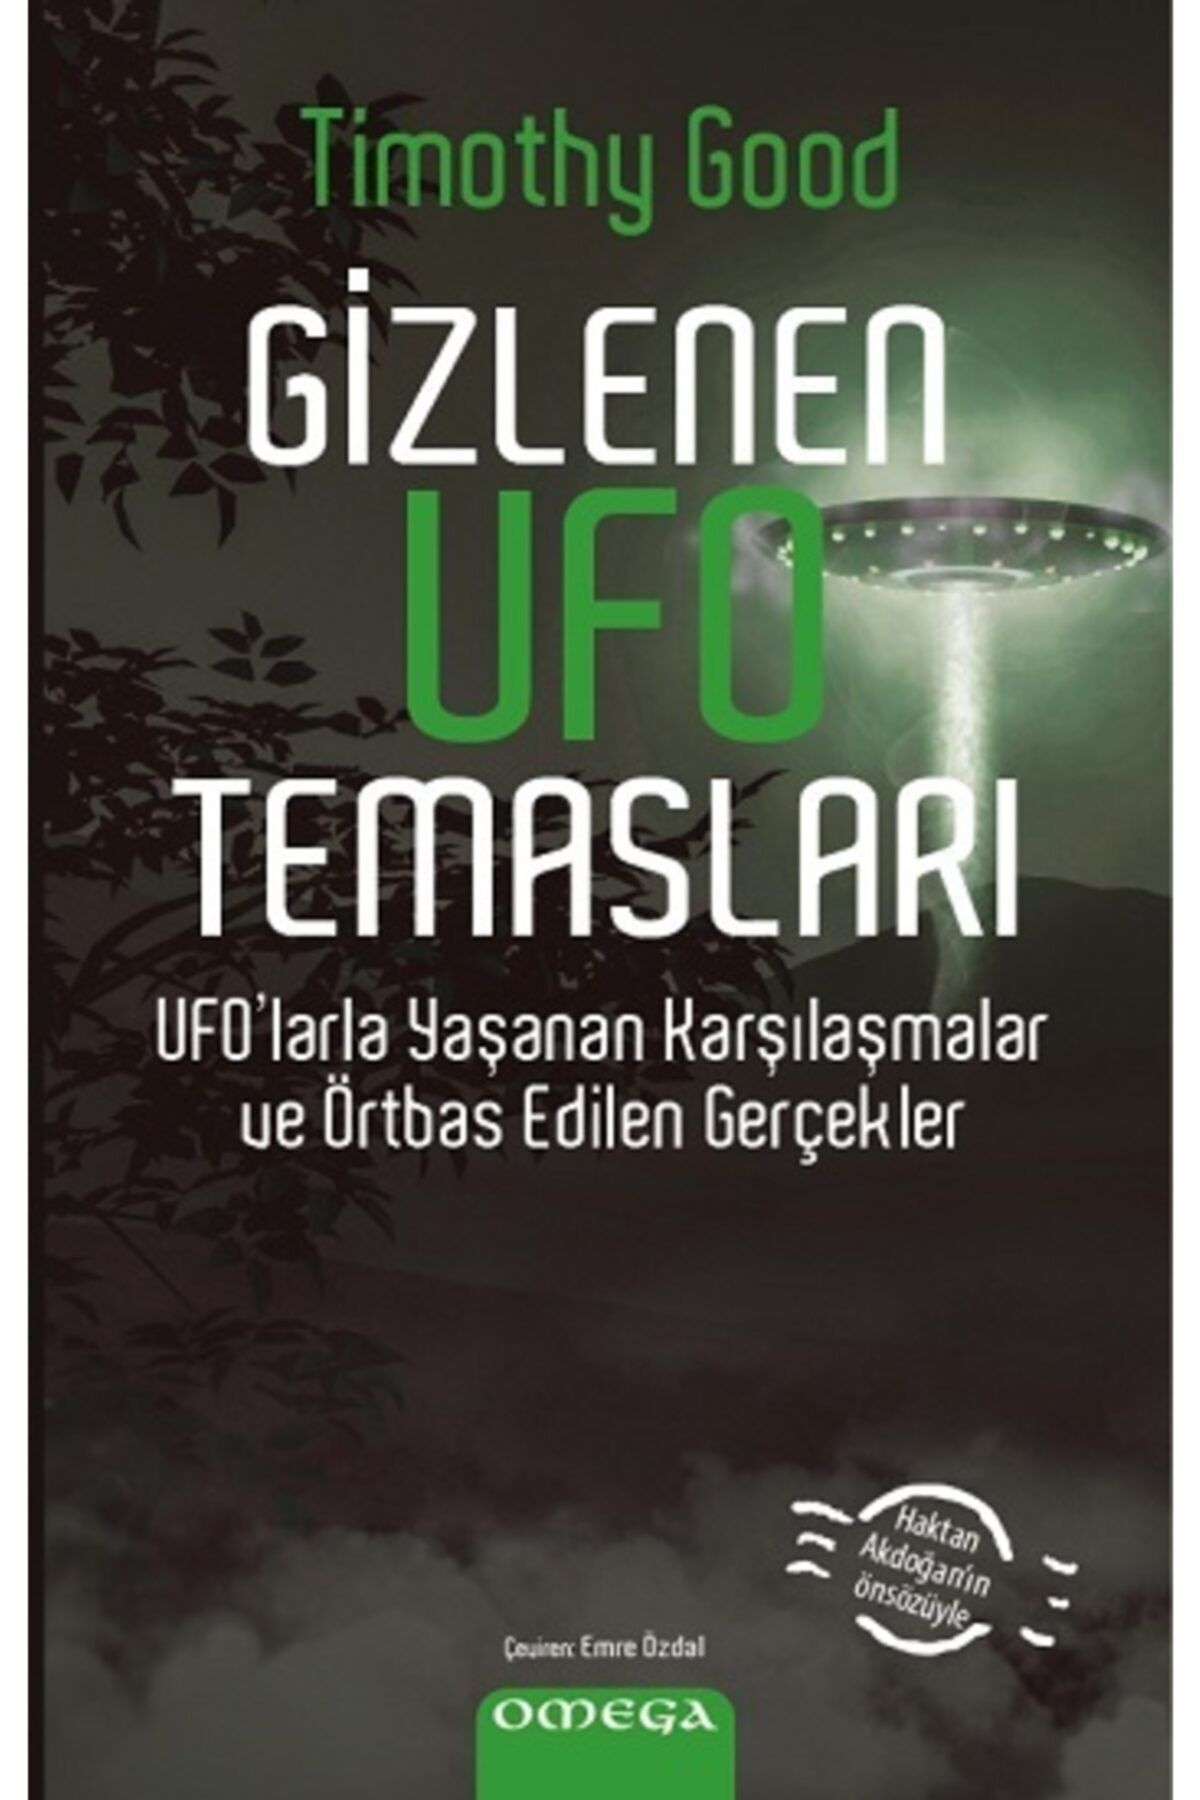 Omega Gizlenen Ufo Temasları Ufo'larla Yaşanan Karşılaşmalar ve Örtbas Edilen Gerçekler